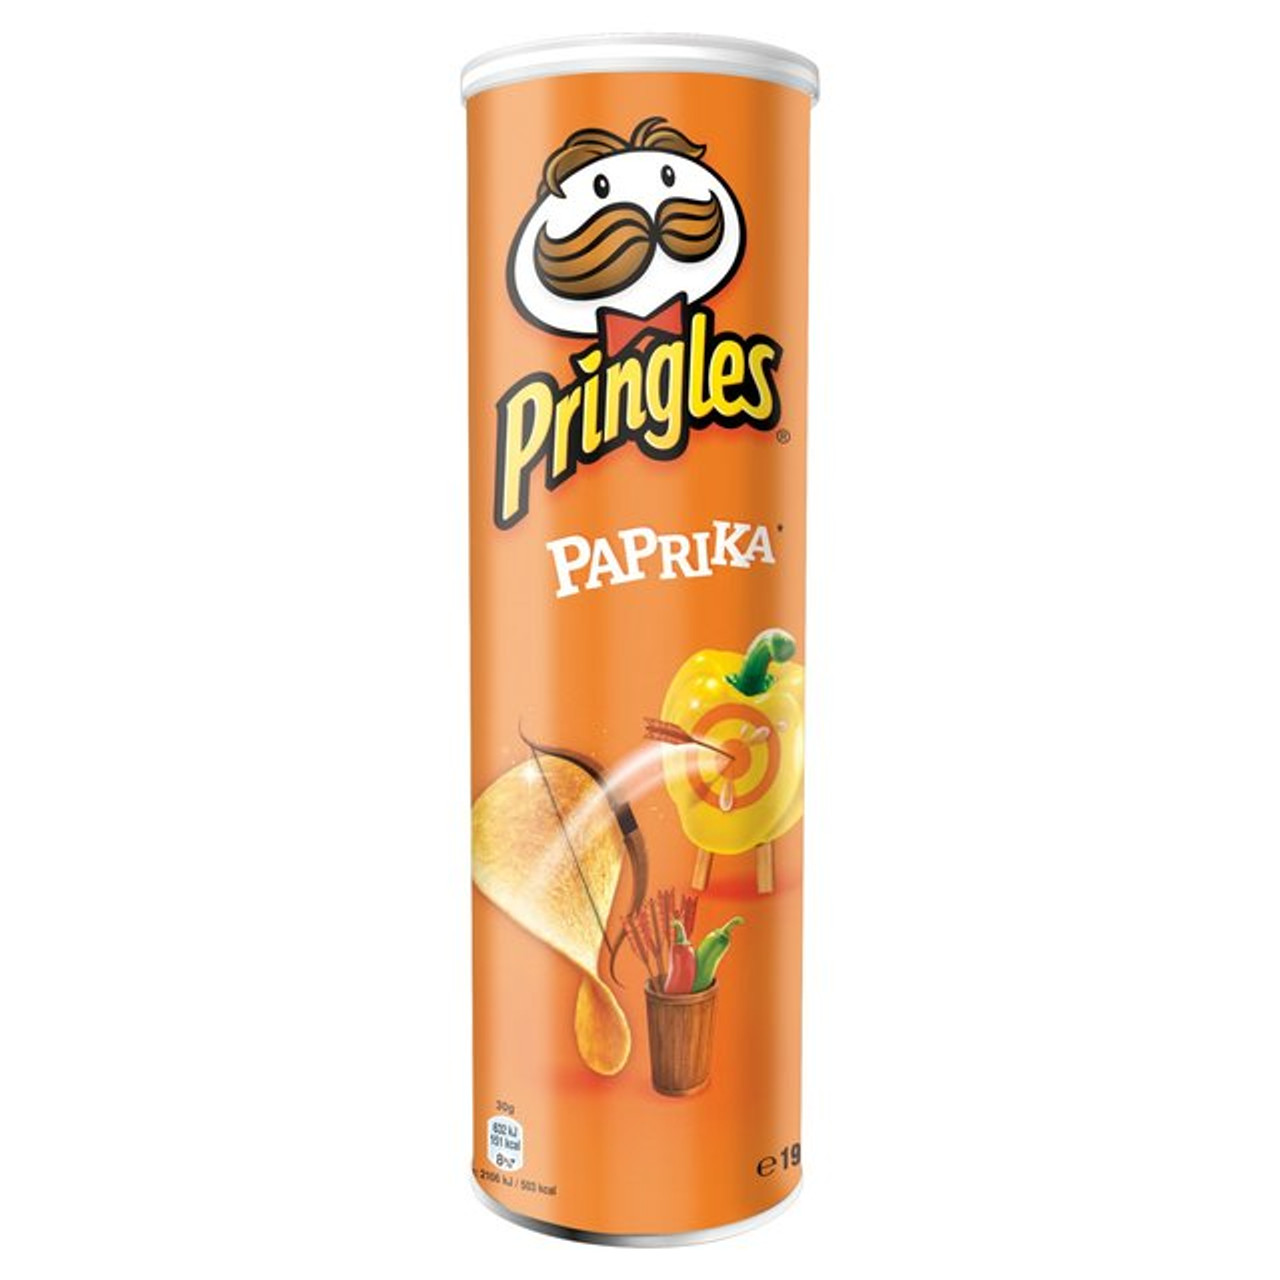 Pringles Paprika Flavor 200G - Caletoni - International Grocer